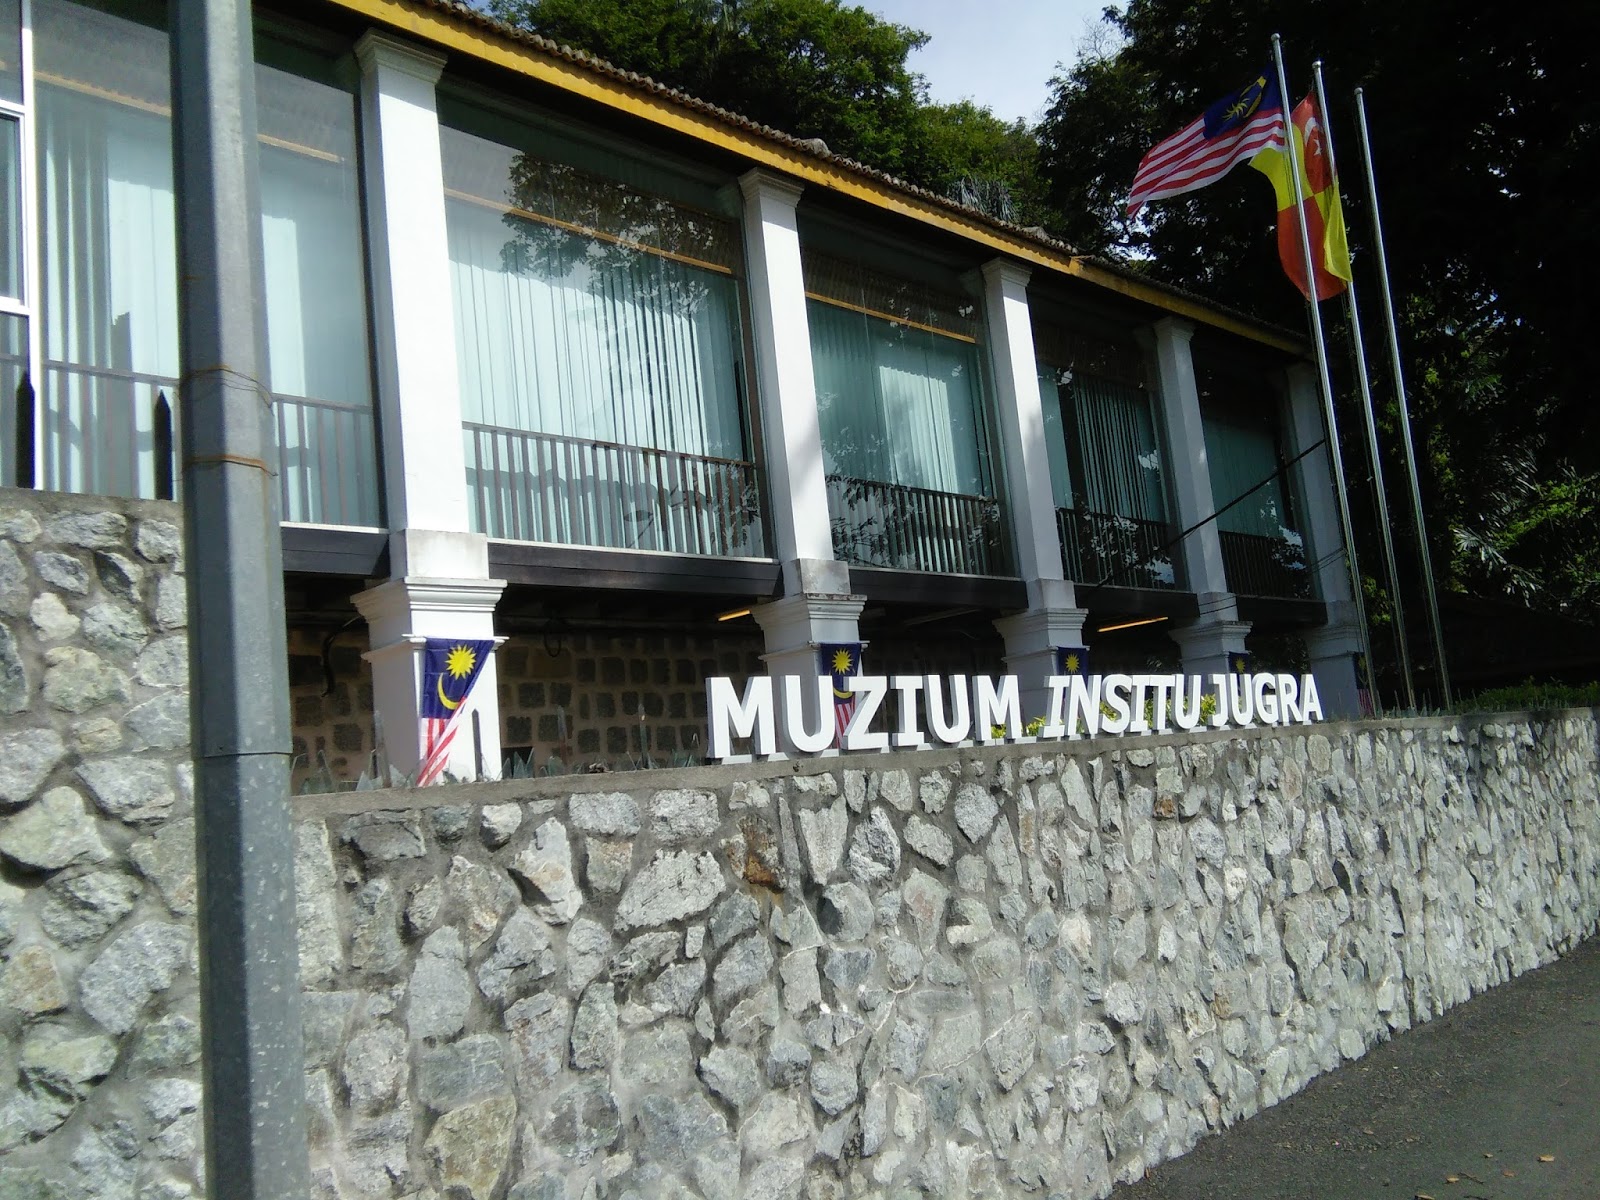 Muzium Insitu Jugra